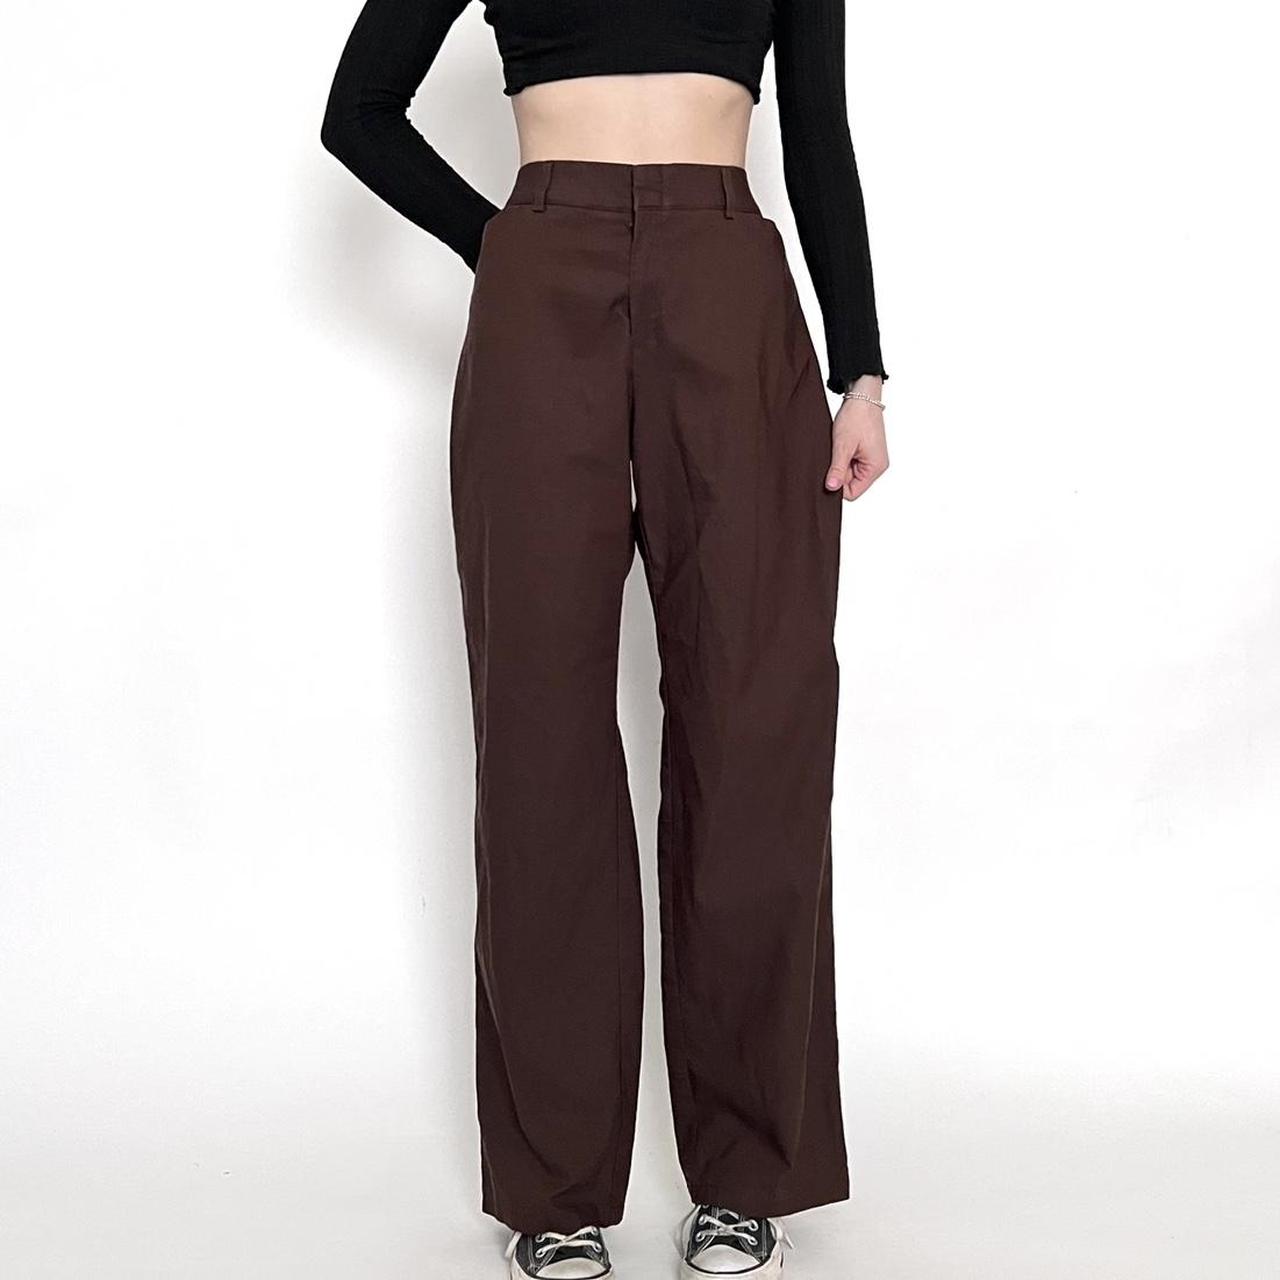 Dockers Women's Brown Trousers (4)